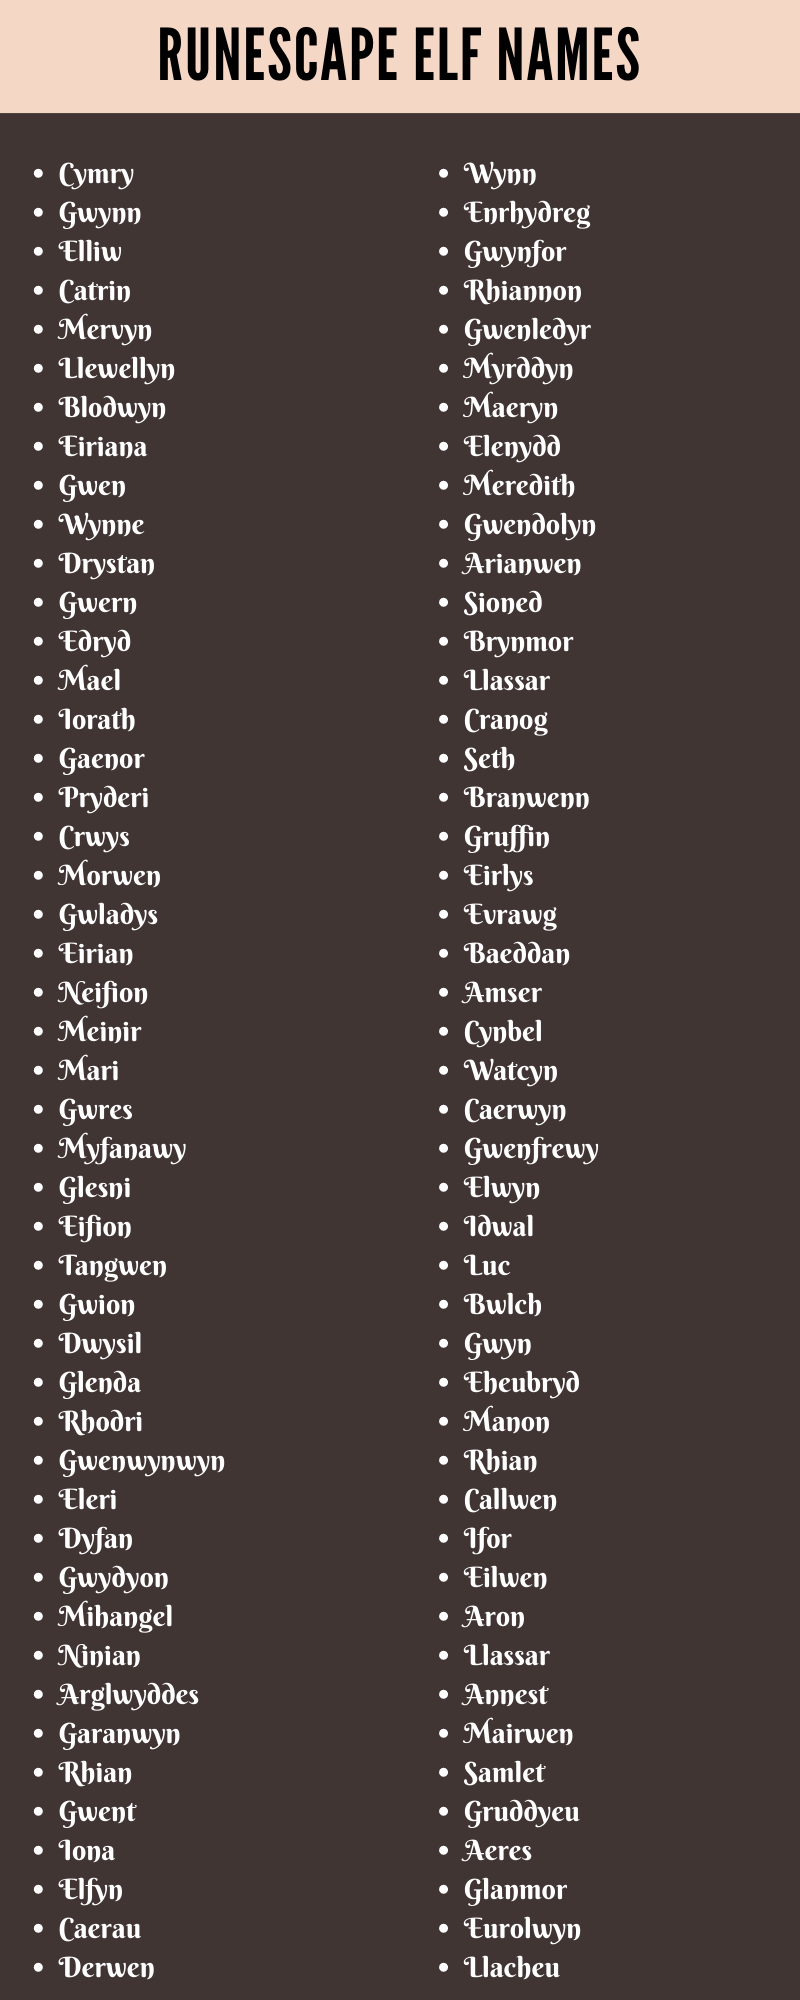  Runescape Elf Names